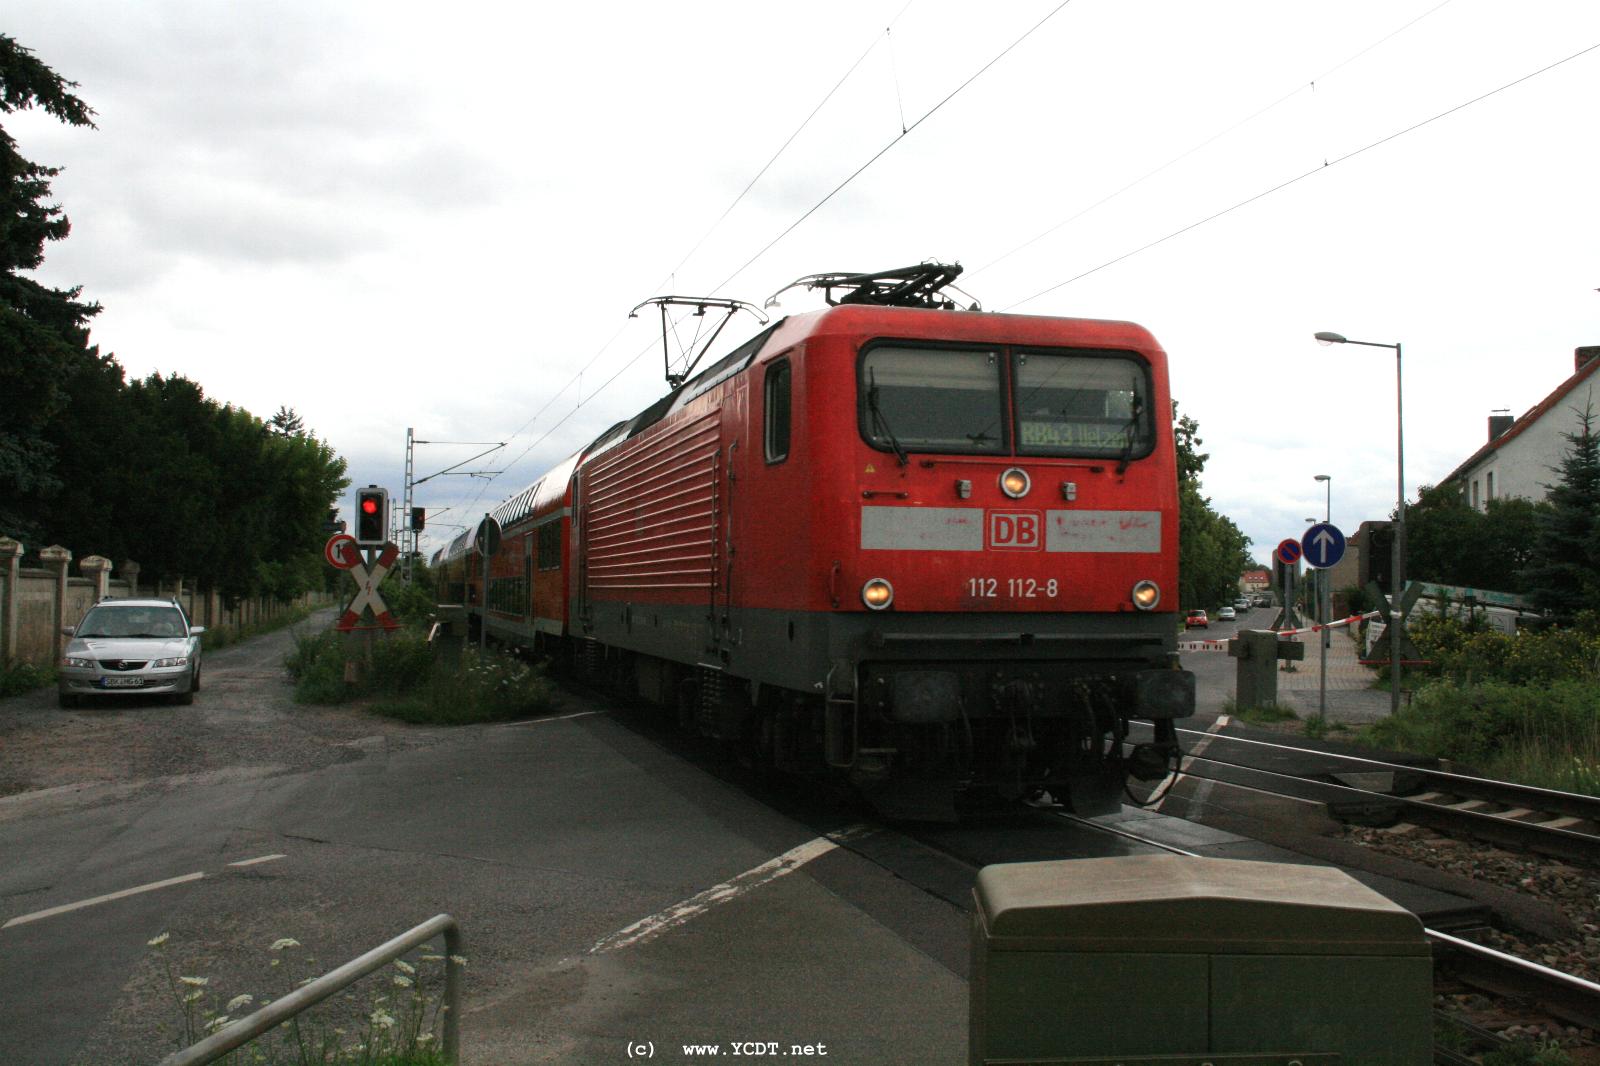  16:37  112 112-8 mit Regio Richtung Schnebeck 